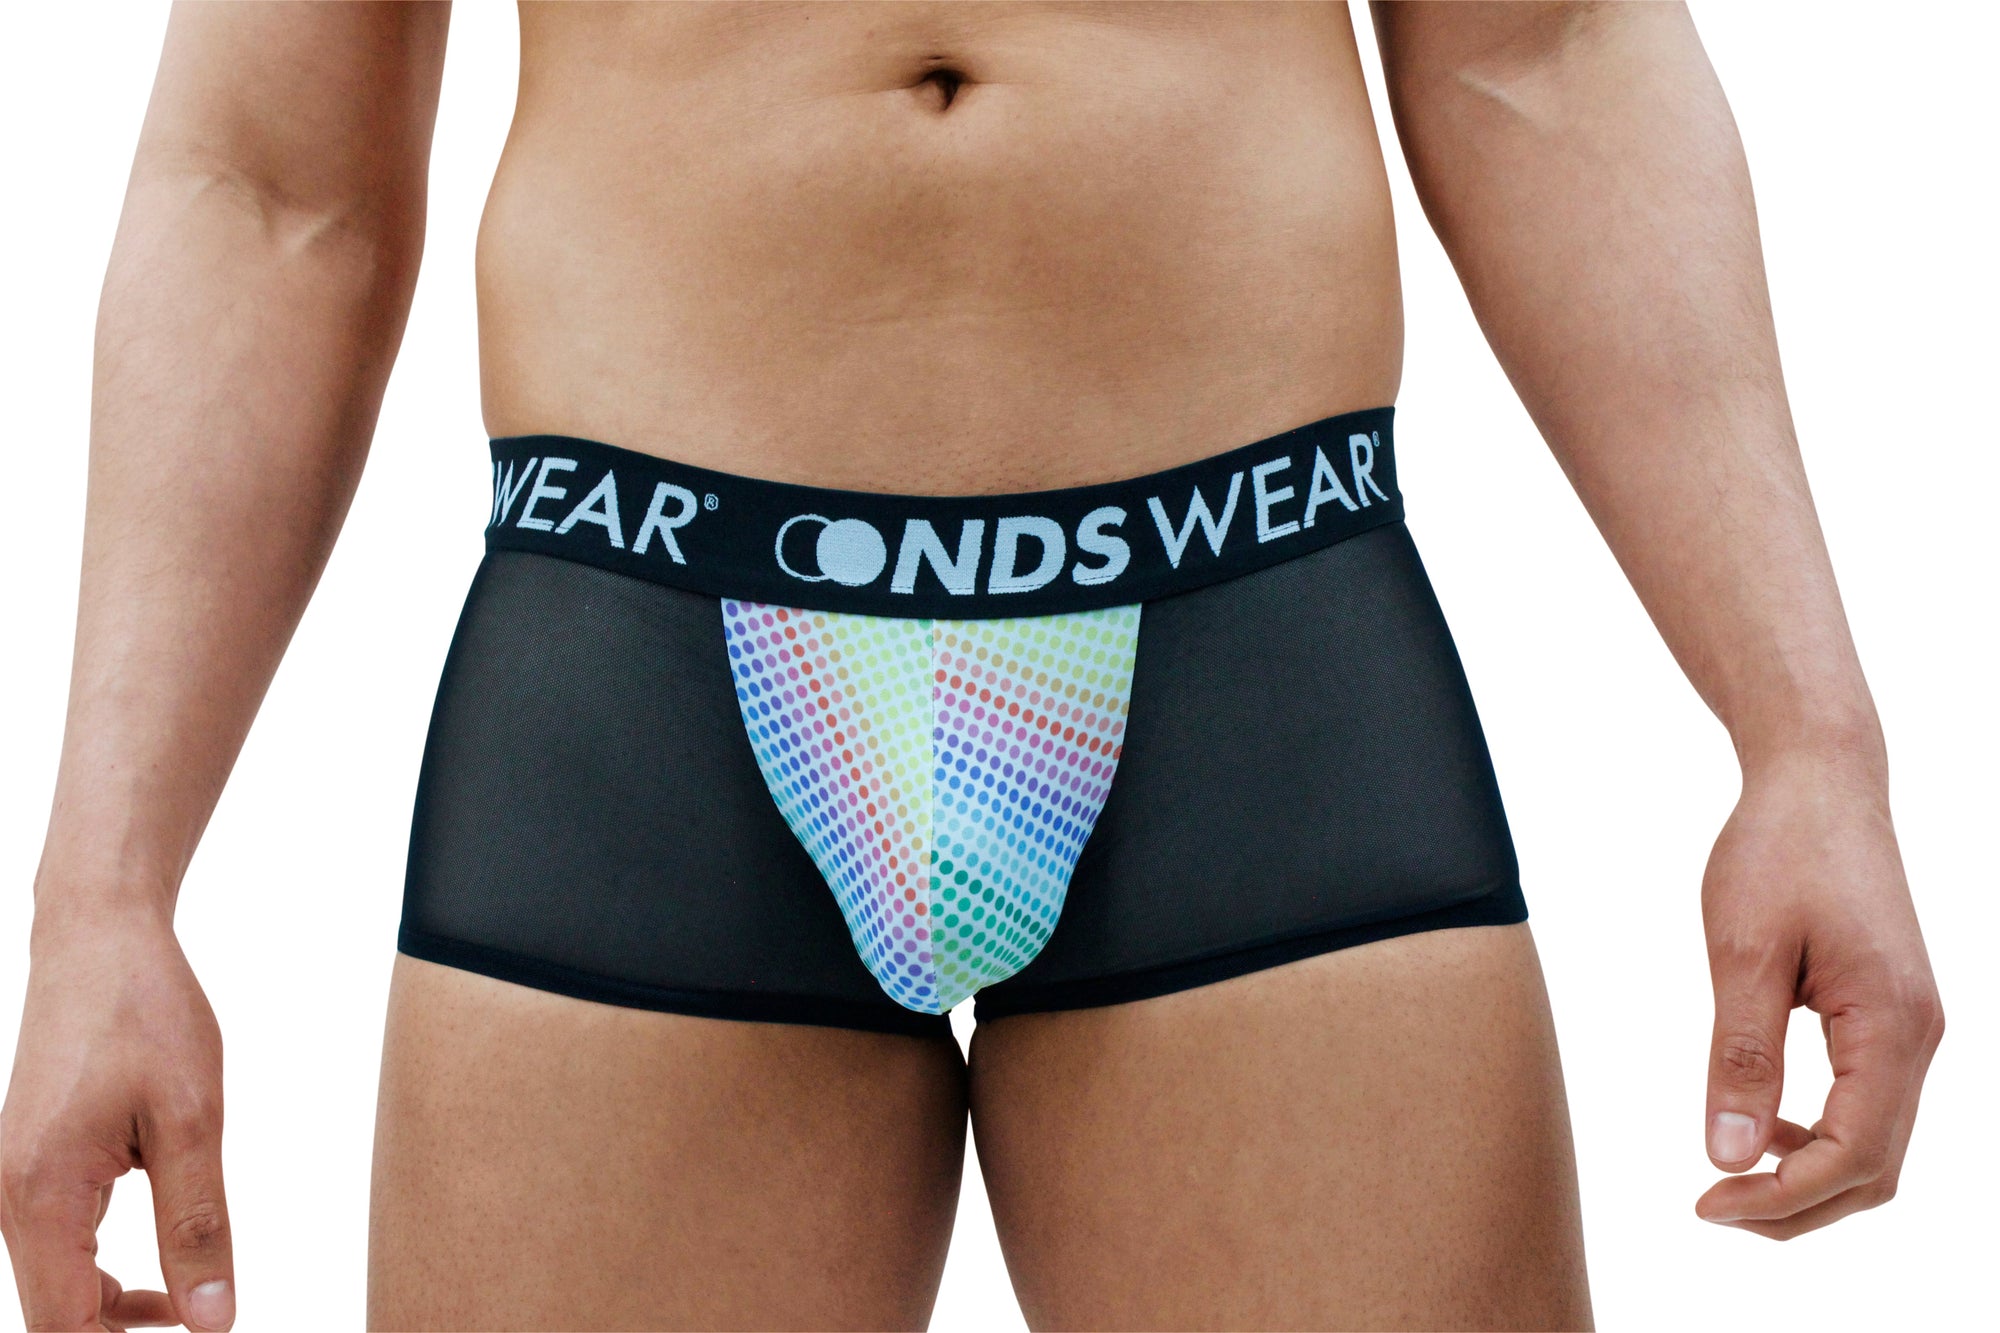 NDS Wear Pouch Brief - Men's Underwear